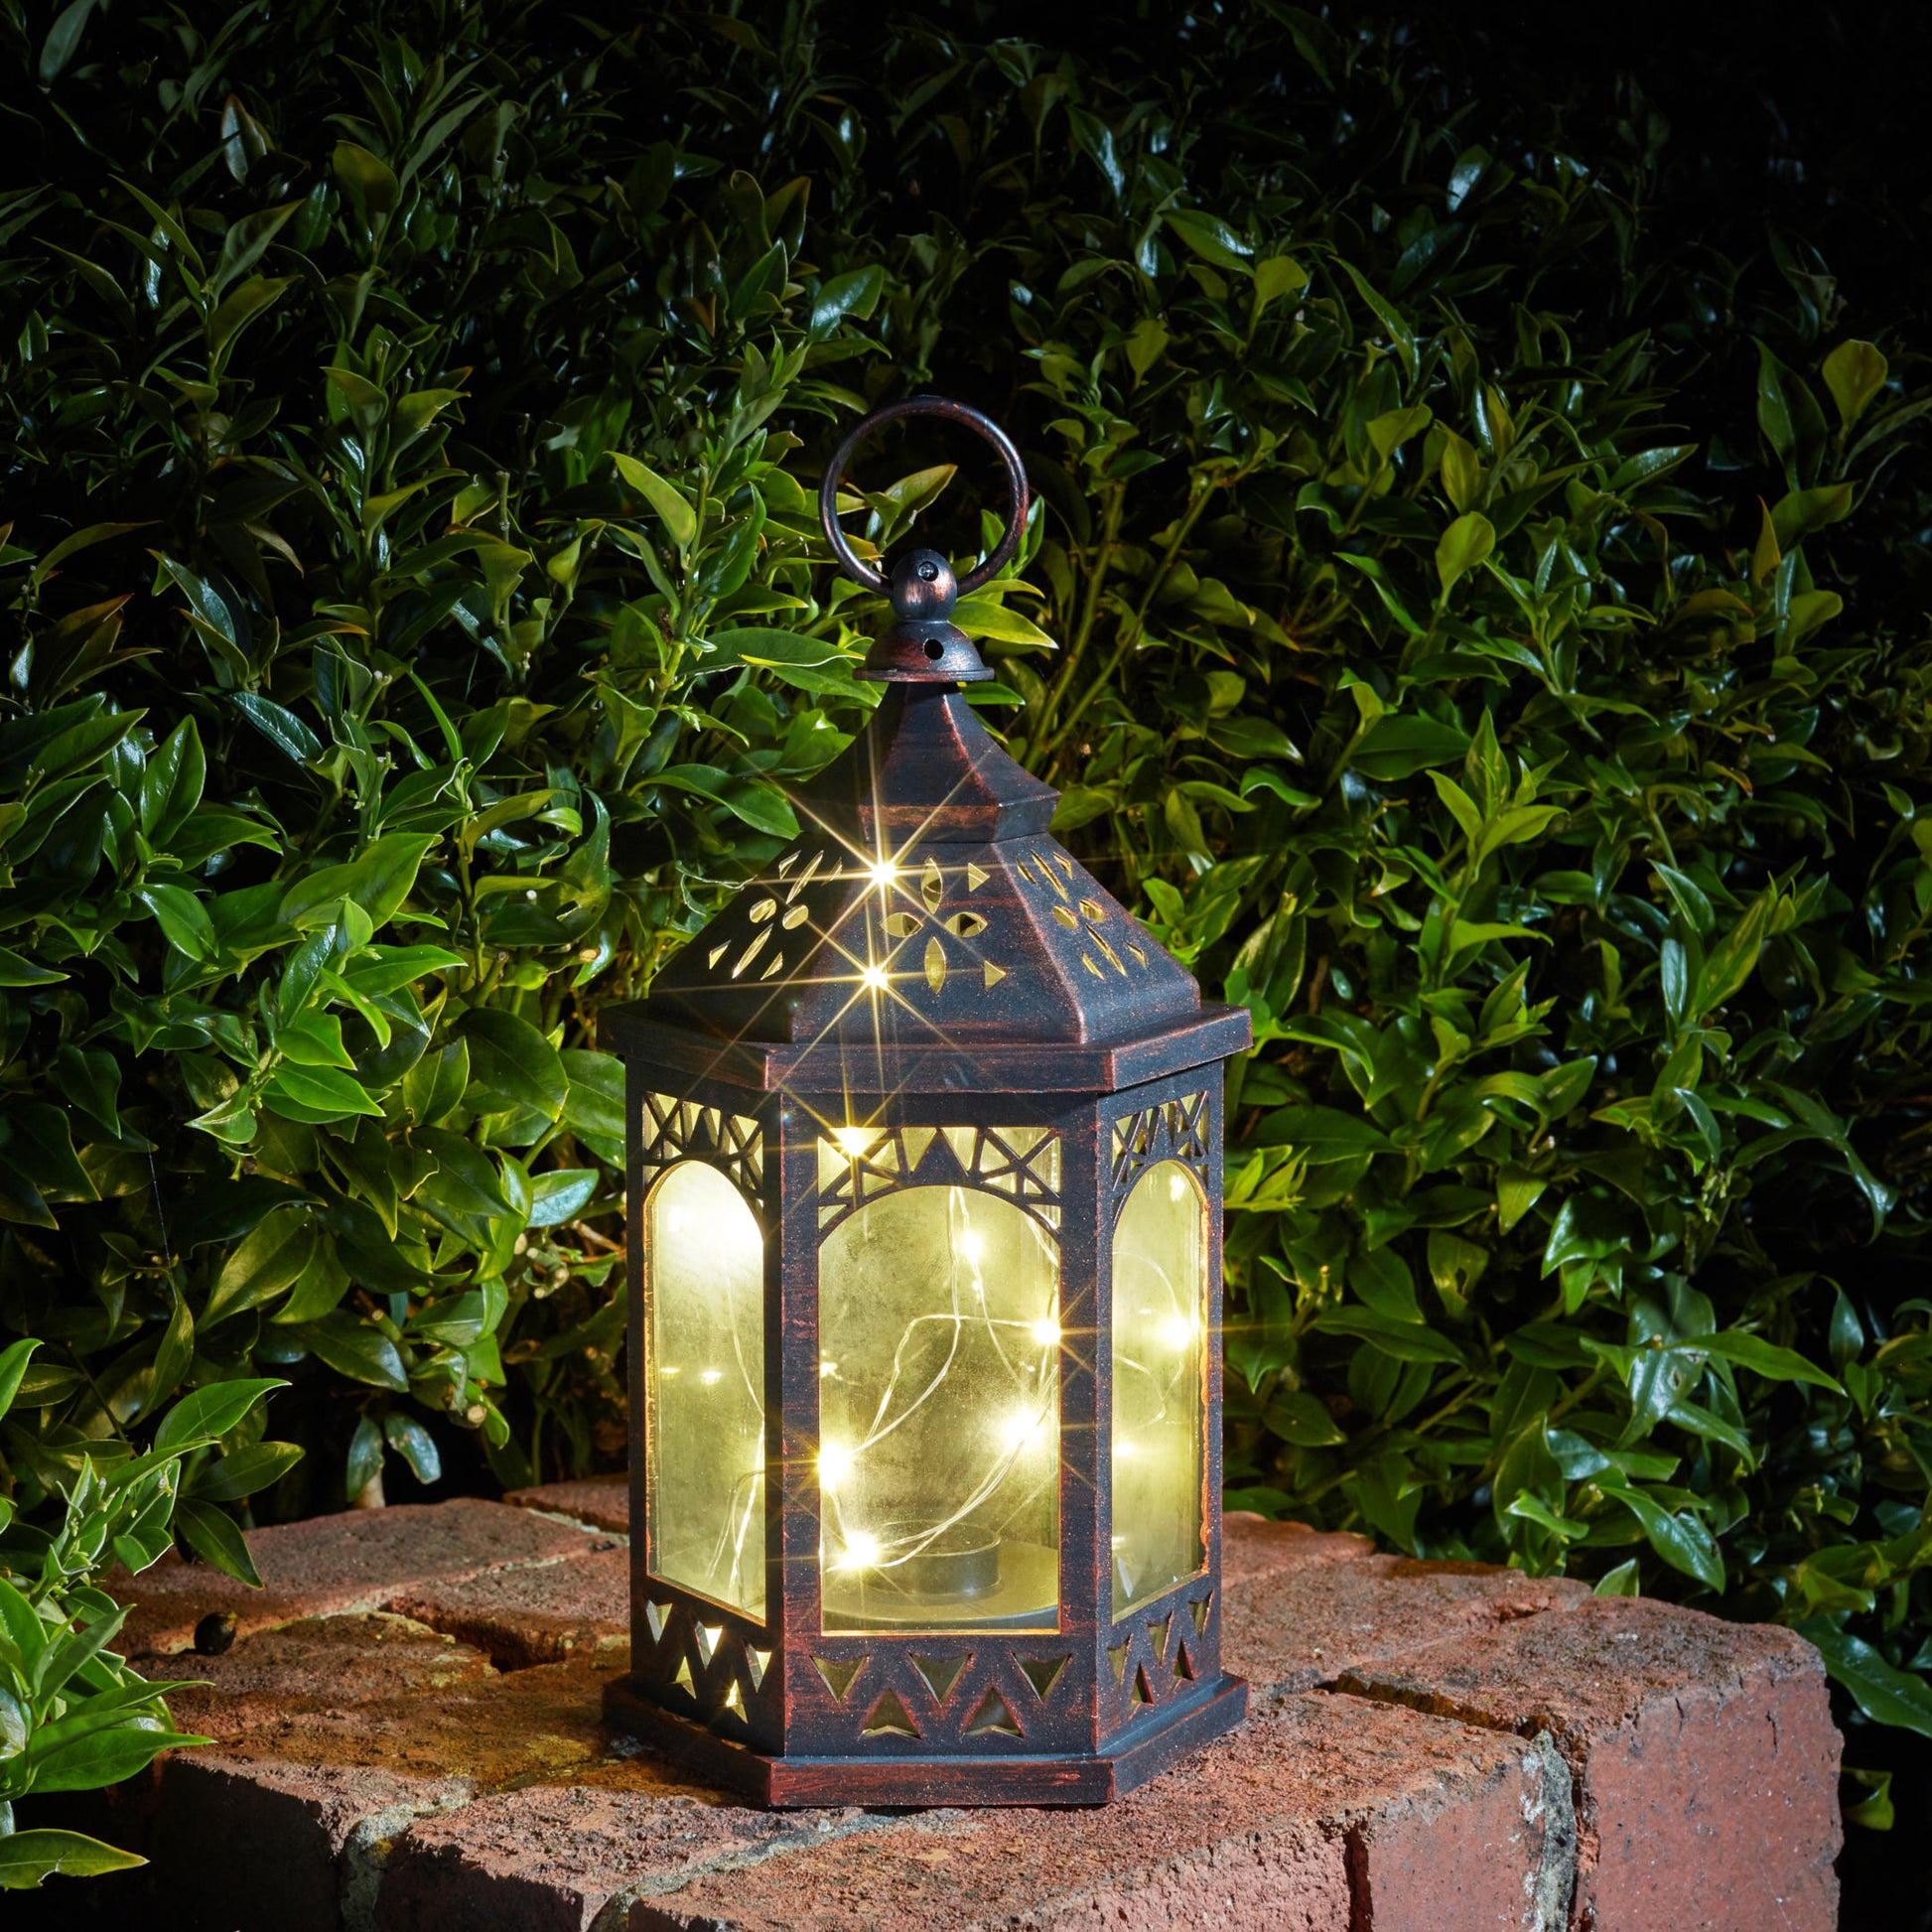 Menší marocký lampáš s 20 teplými bielymi LEDkami na tenkom drôtiku vytvára svetluškine svetlo v záhrade